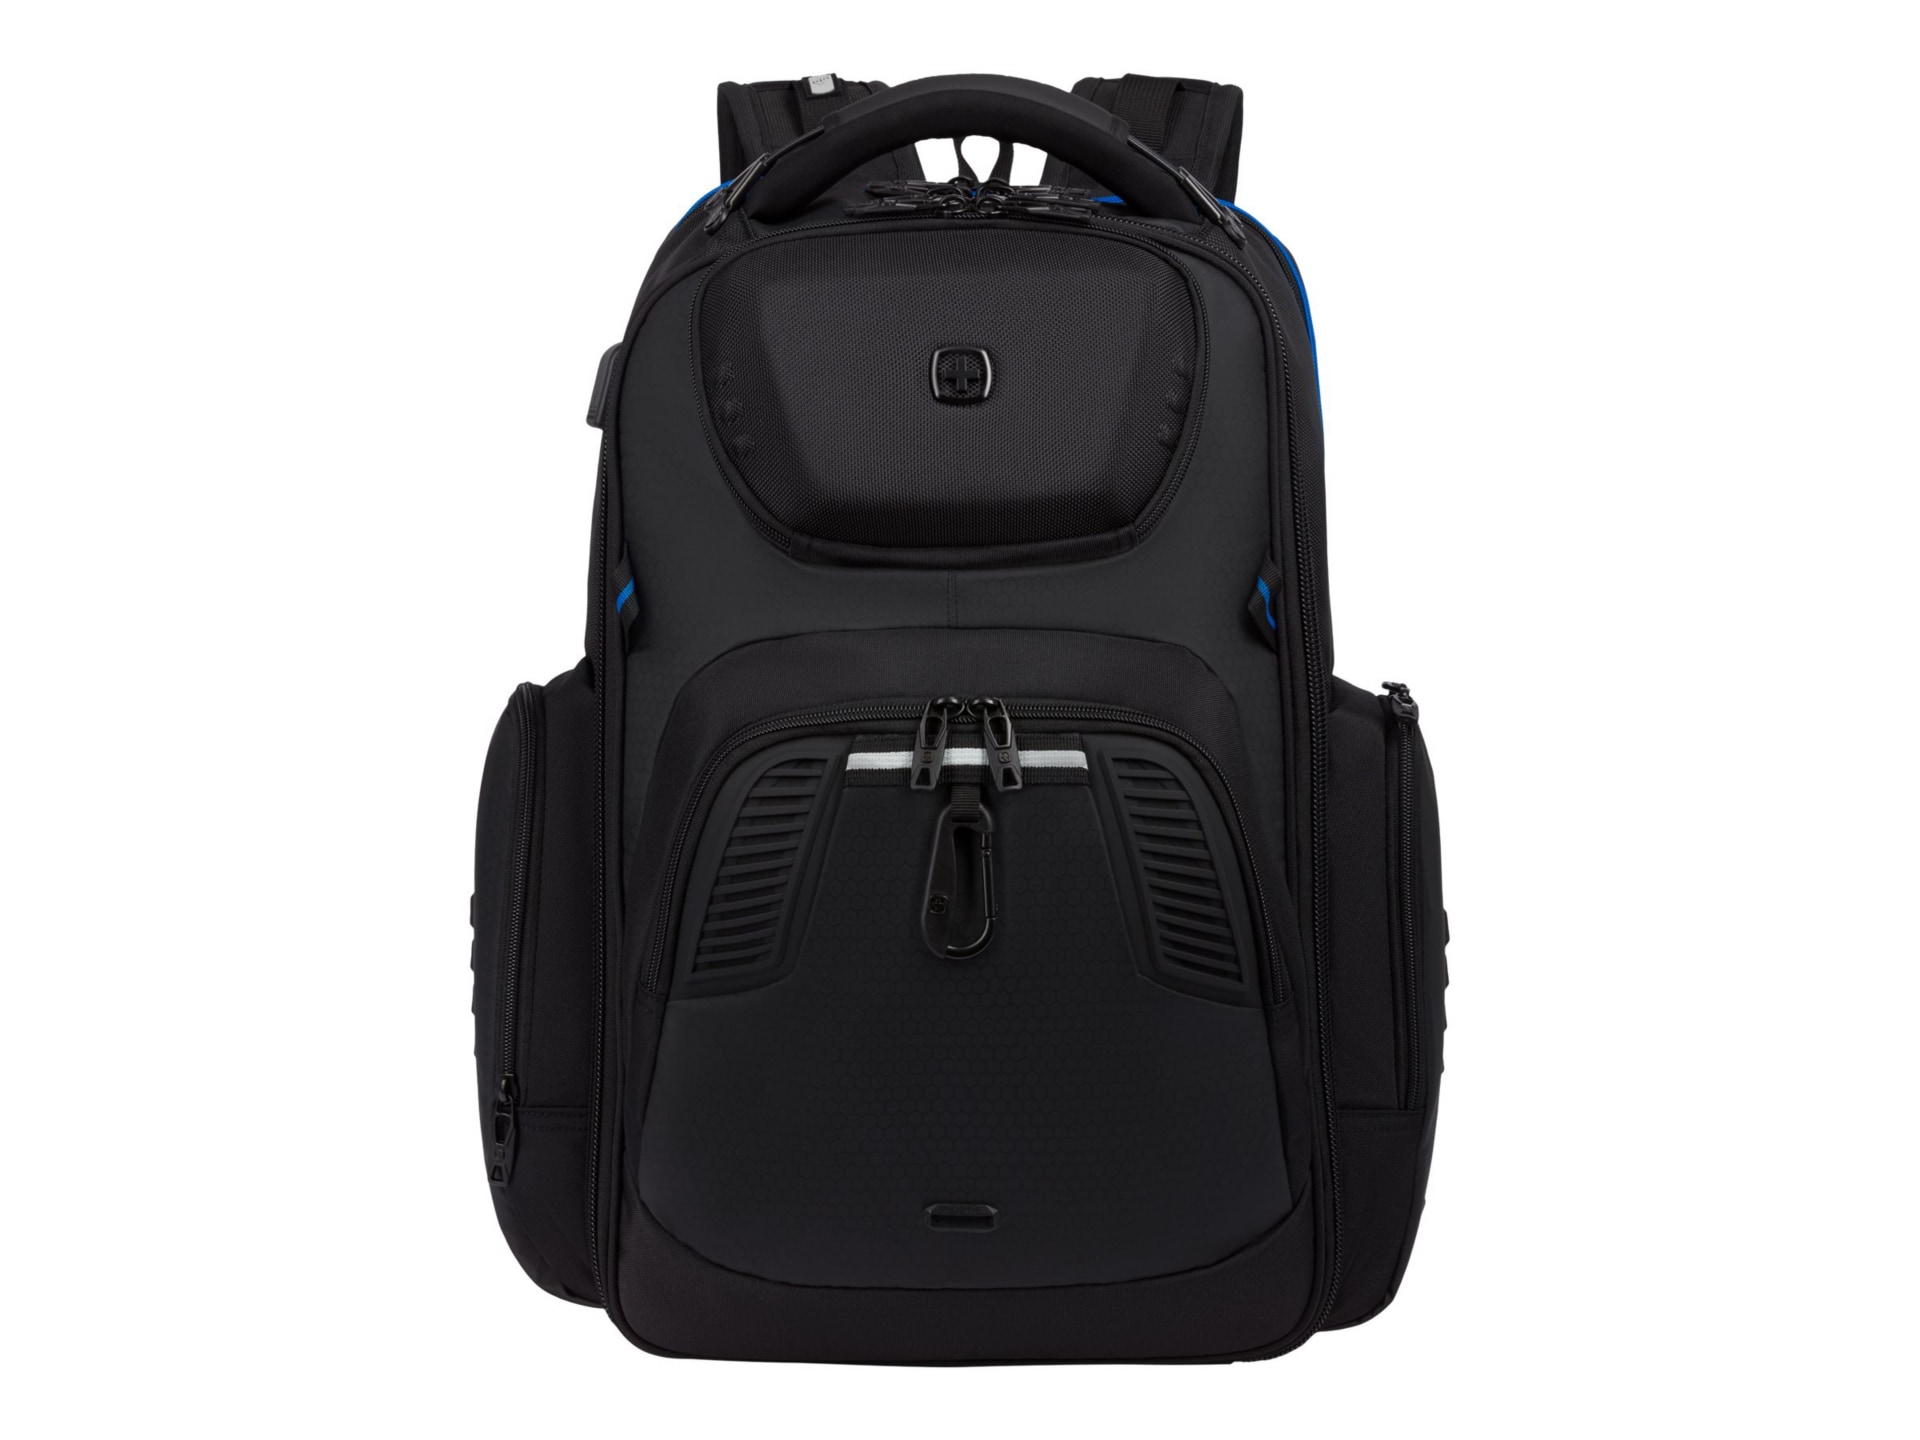 Wenger Swissgear 8121 USB ScanSmart Gaming Laptop Backpack - Black